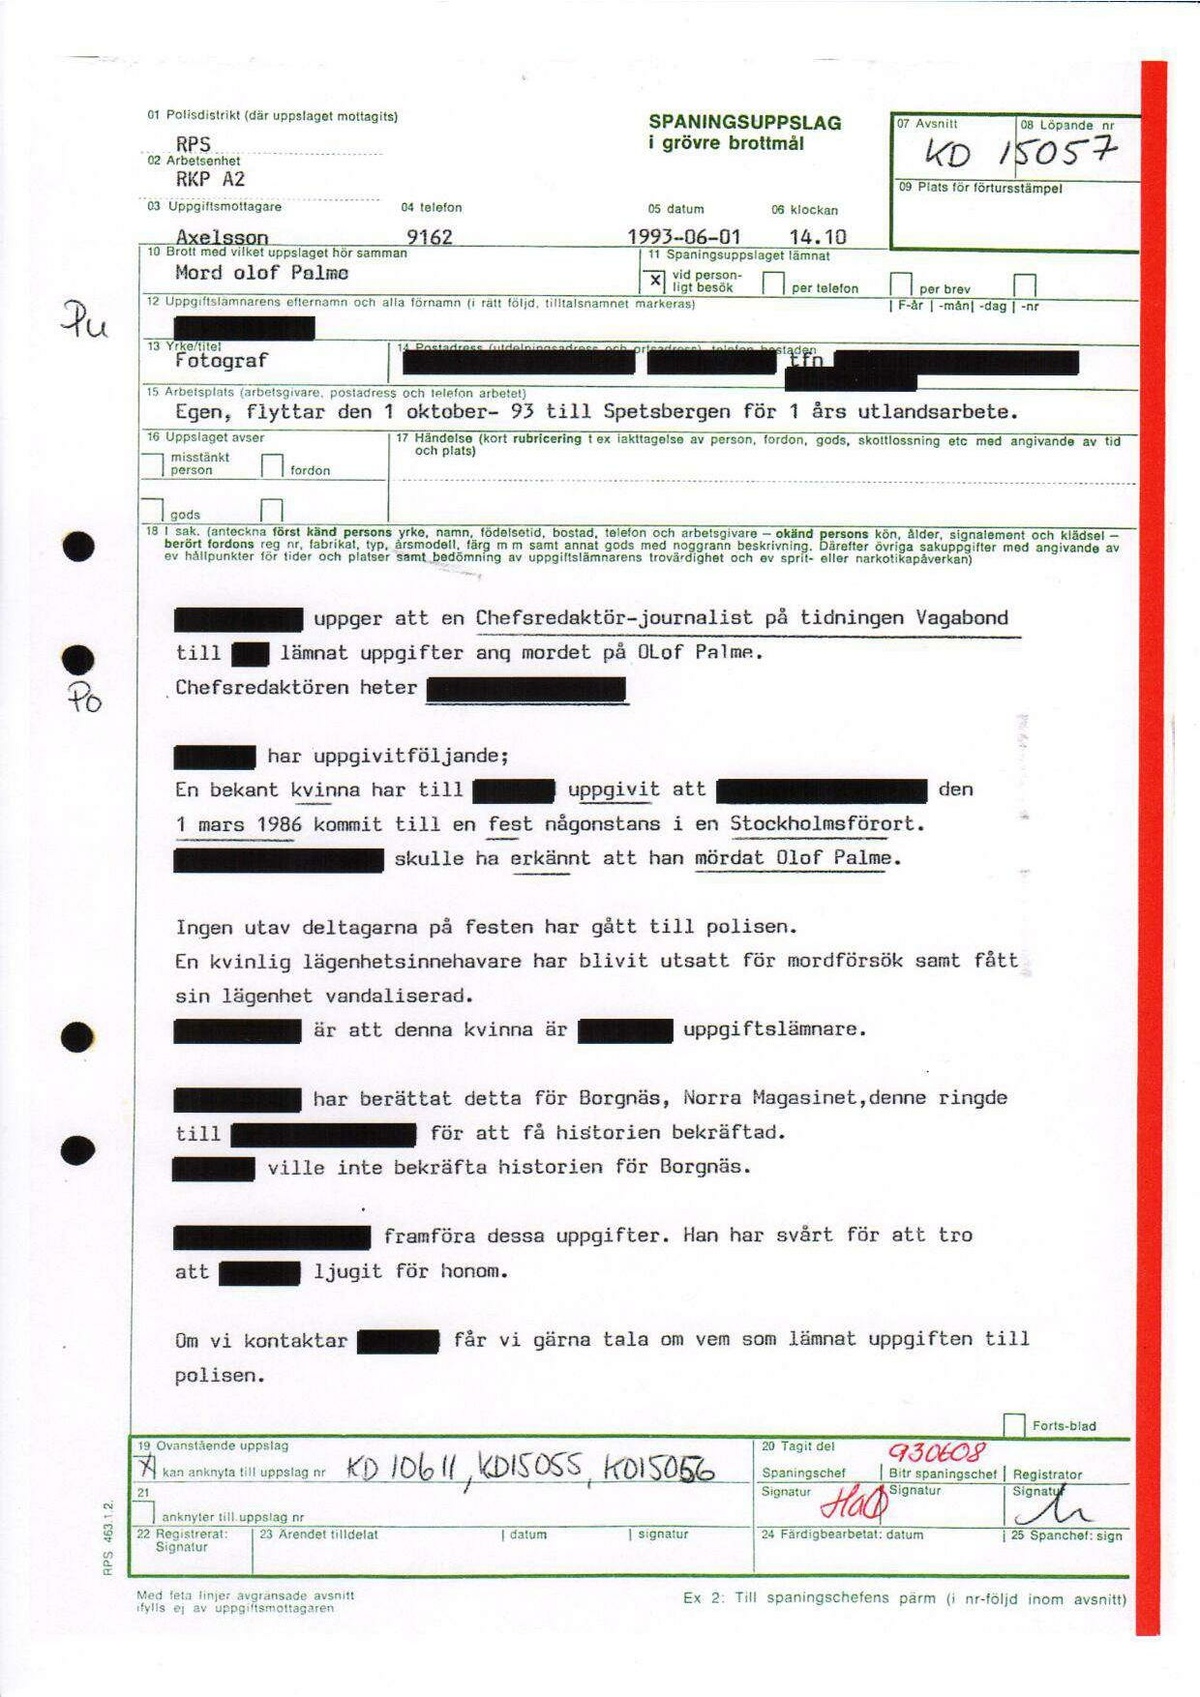 Pol-1993-06-01 1410 KD15057-00 Erkännanden Palmemordet.pdf